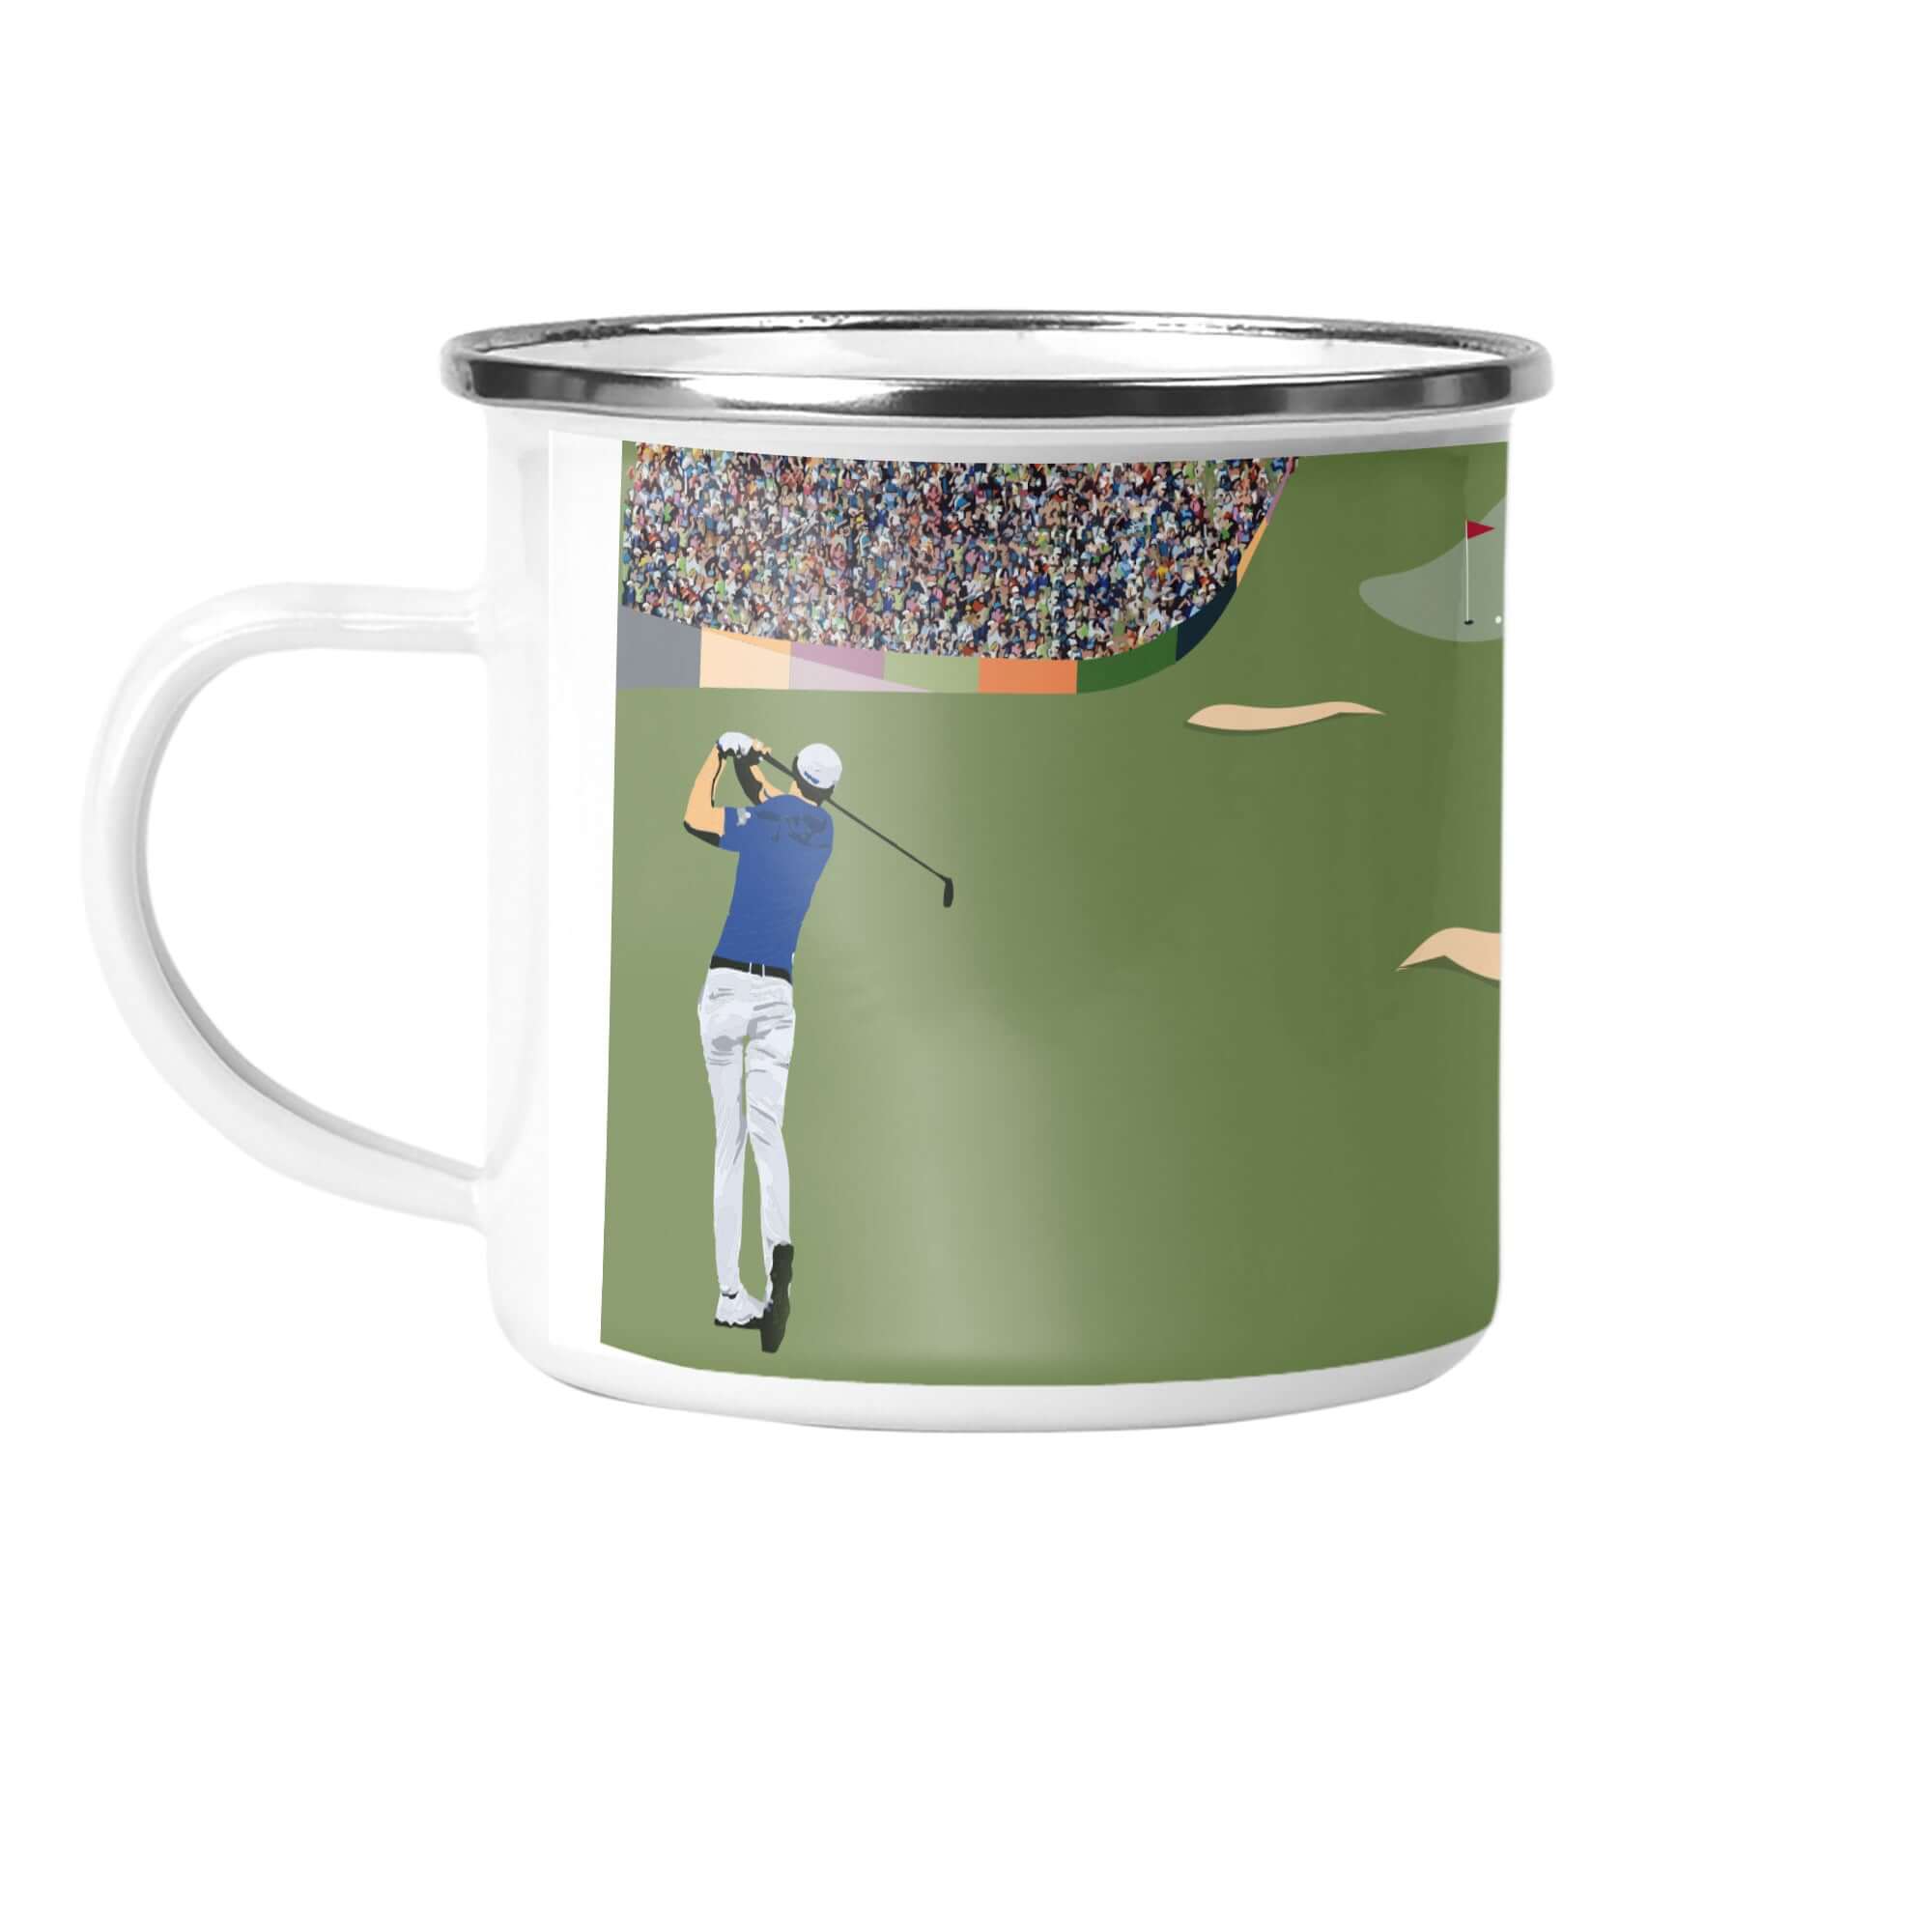 Golf "The Fairway" Enamel Mug